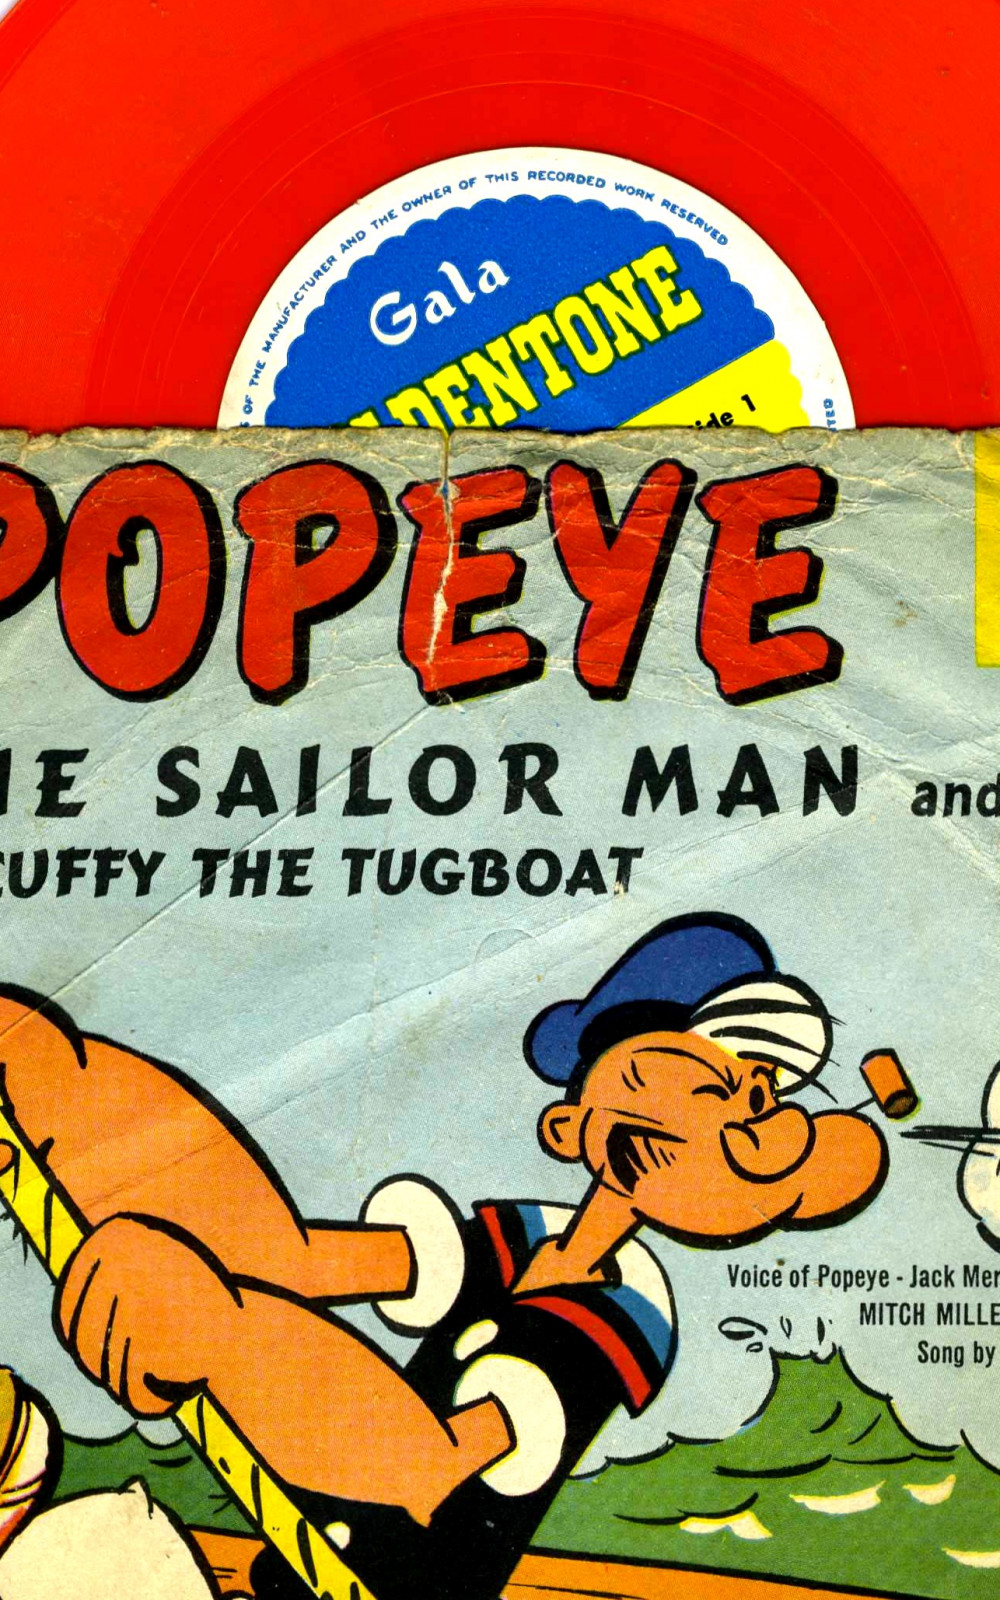 Un vieux vinyl pour enfants avec la voix originale de Popeye